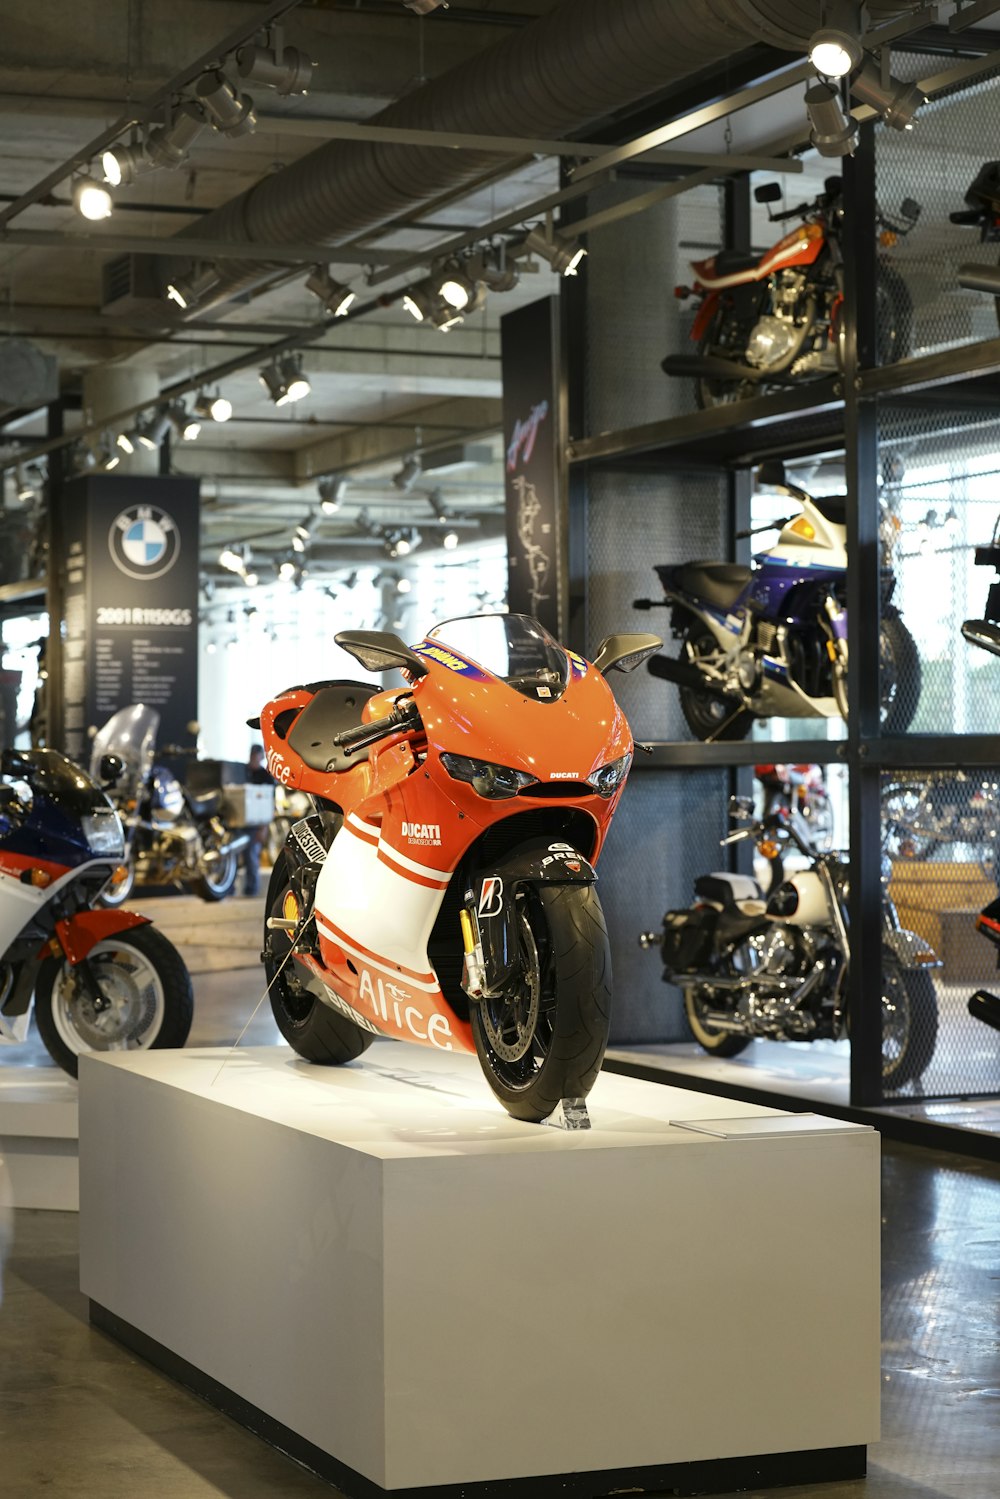 Ein orangefarbenes Motorrad ist in einem Showroom ausgestellt